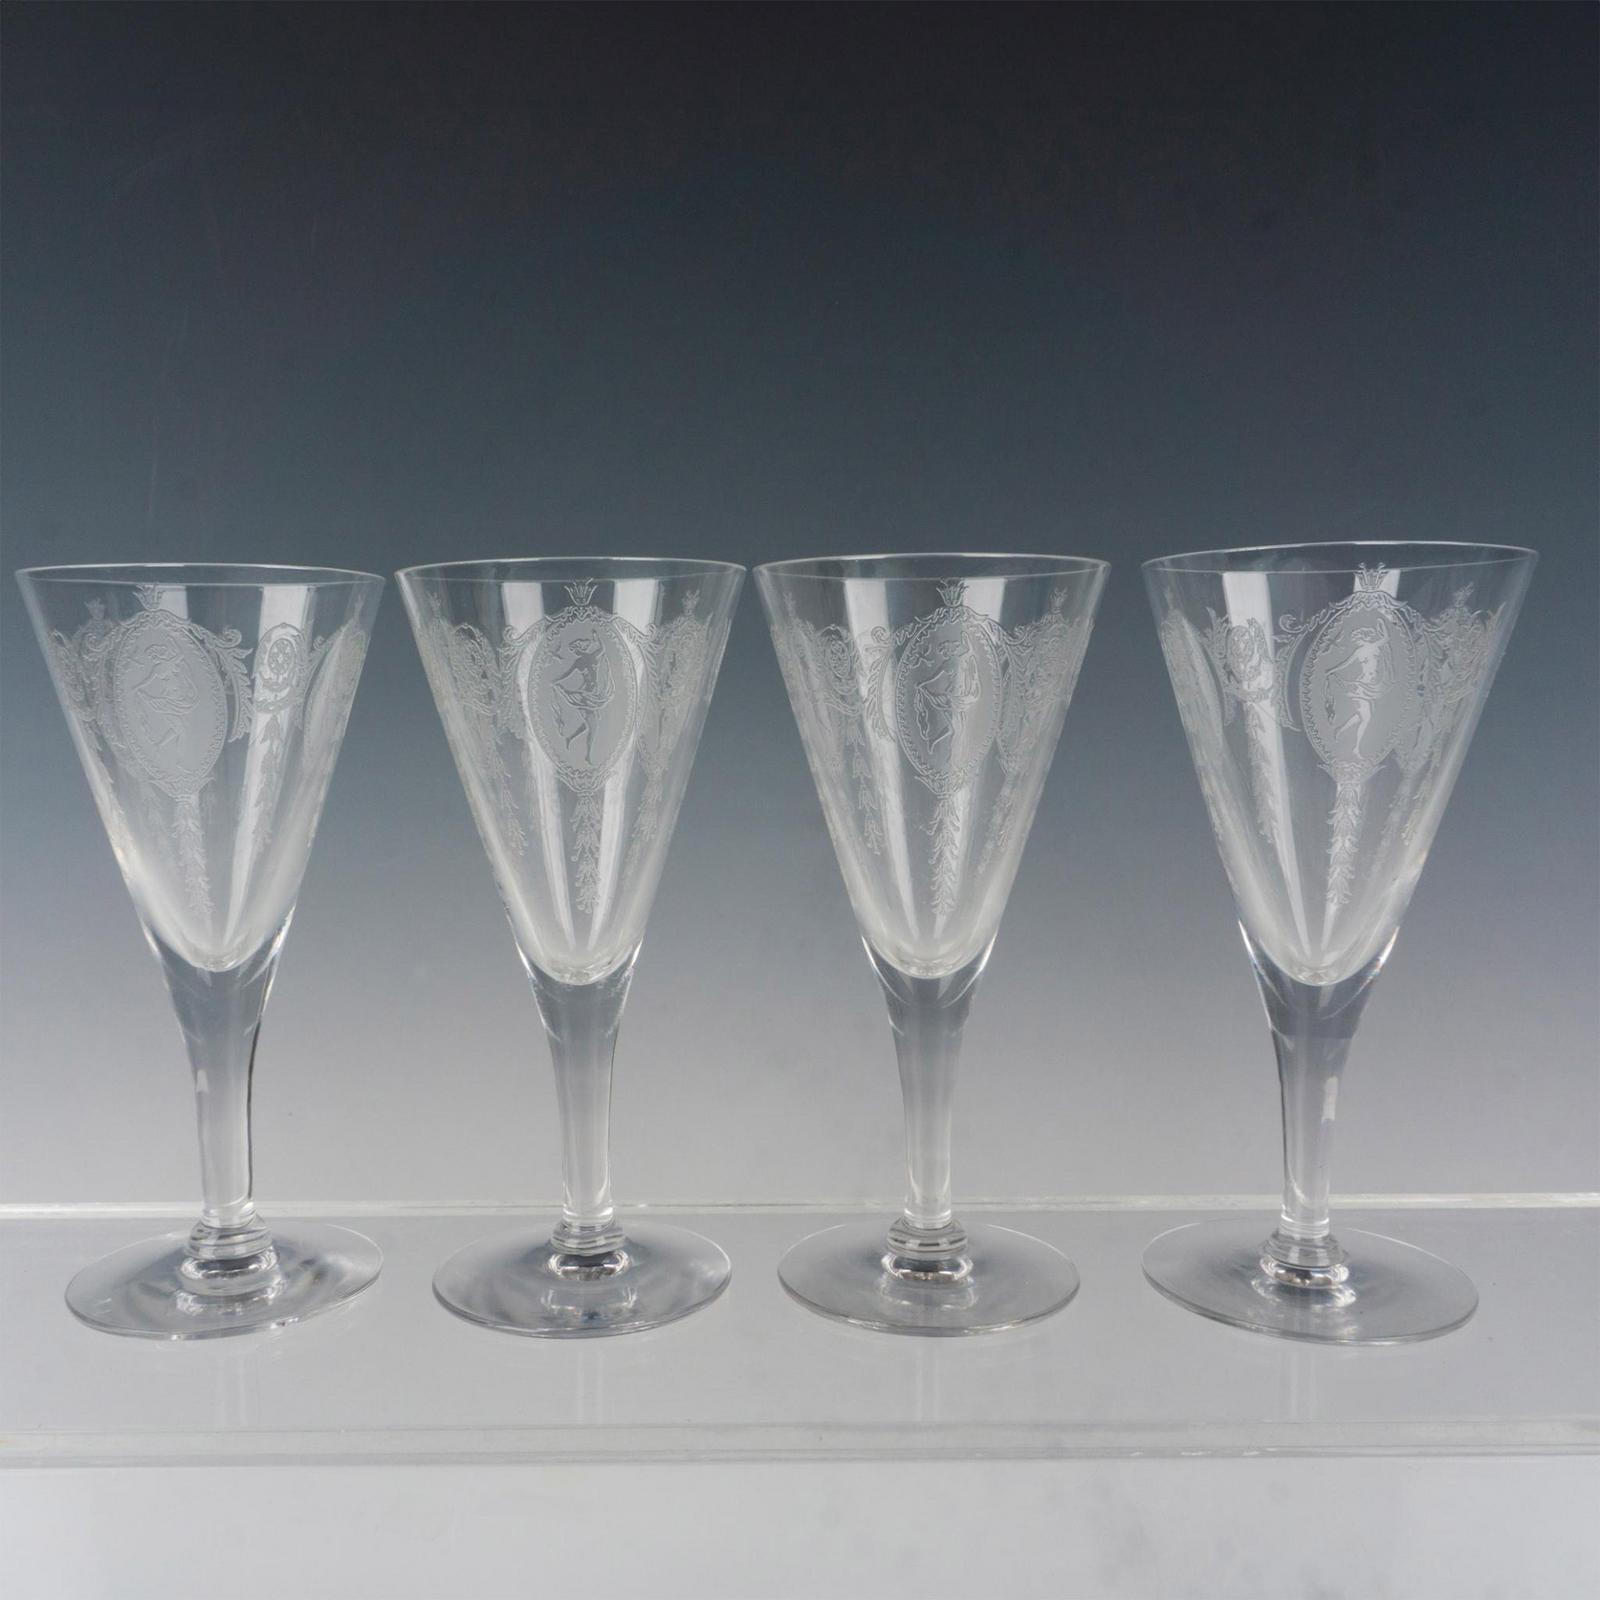 4 Vintage Etched Crystal Cocktail Glasses, Tiffin Franciscan